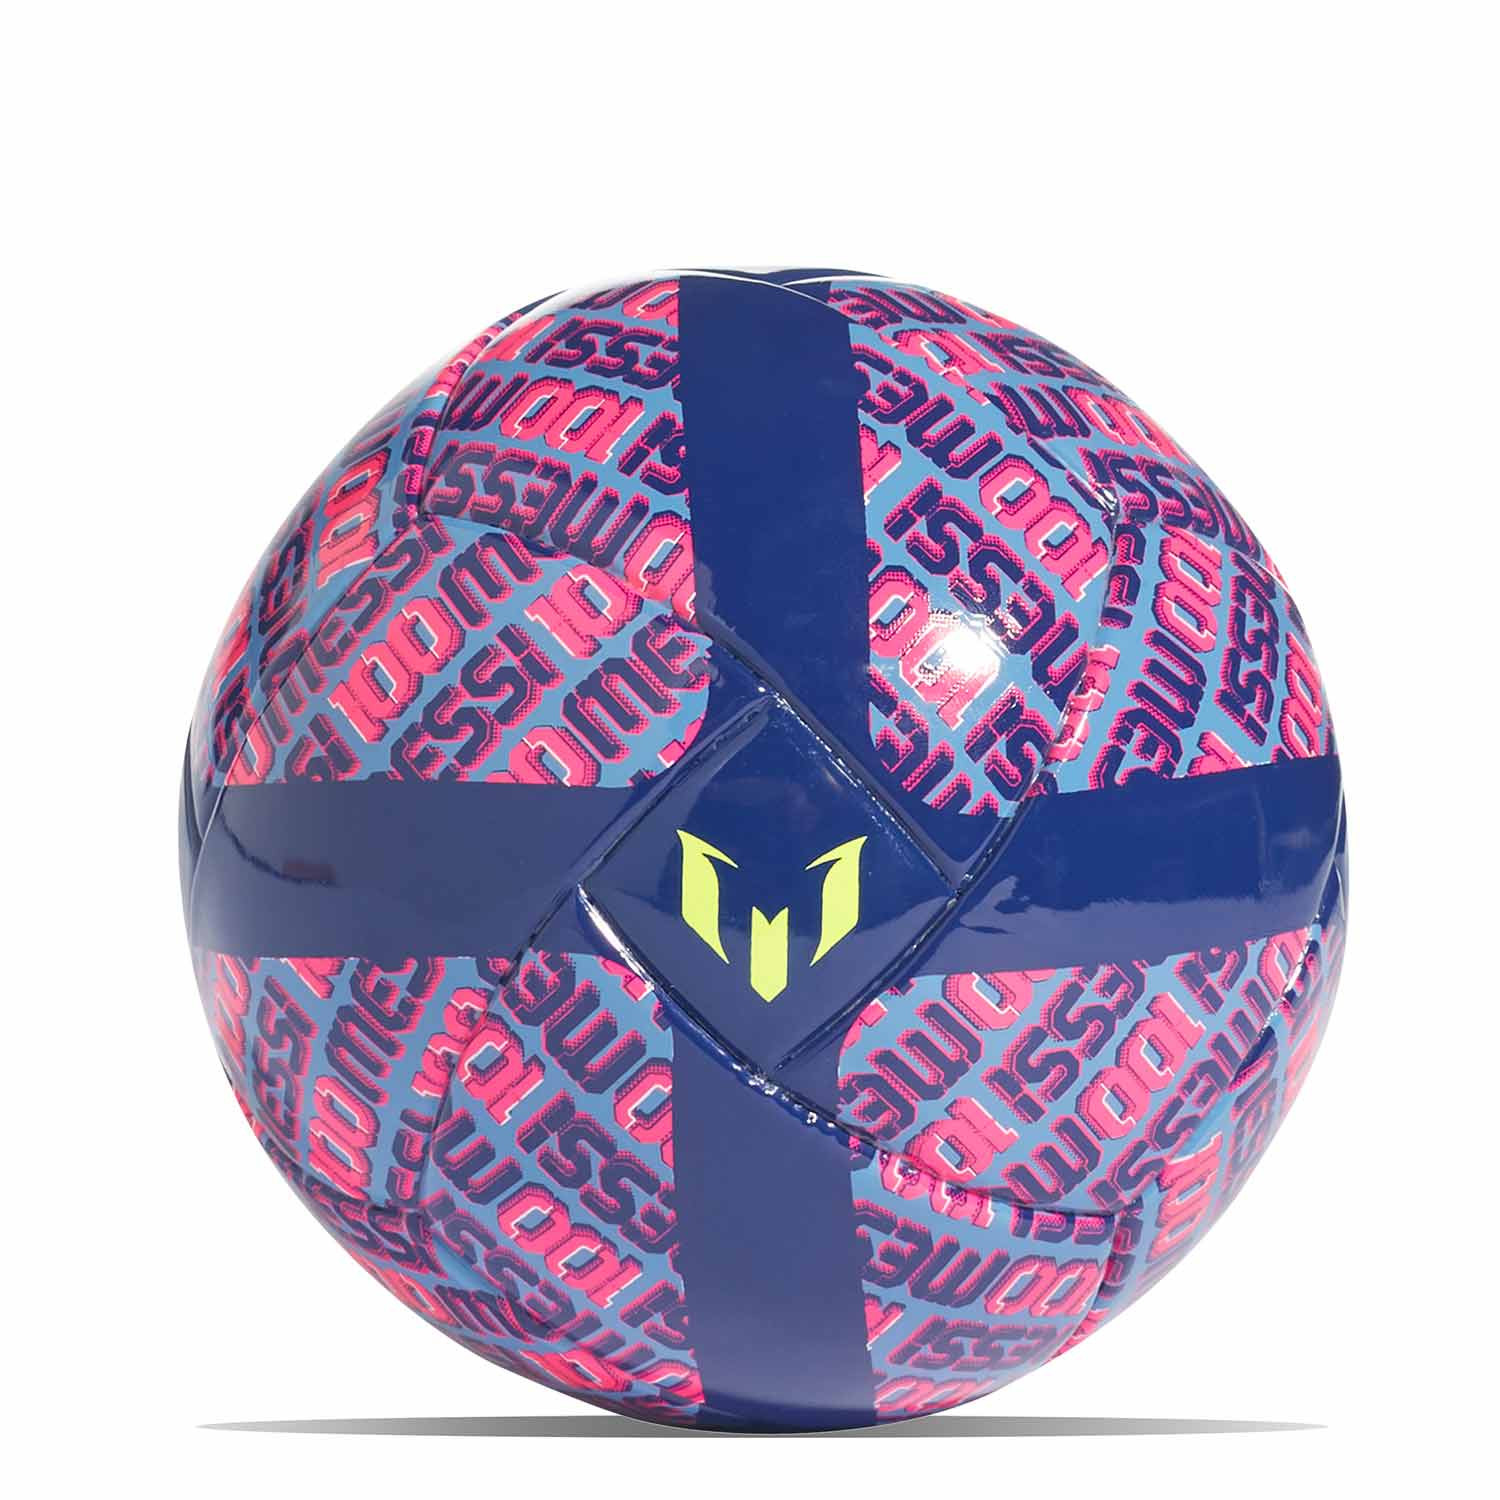 es suficiente acampar eficiencia Balón adidas Messi talla mini azul marino y rosa | futbolmania